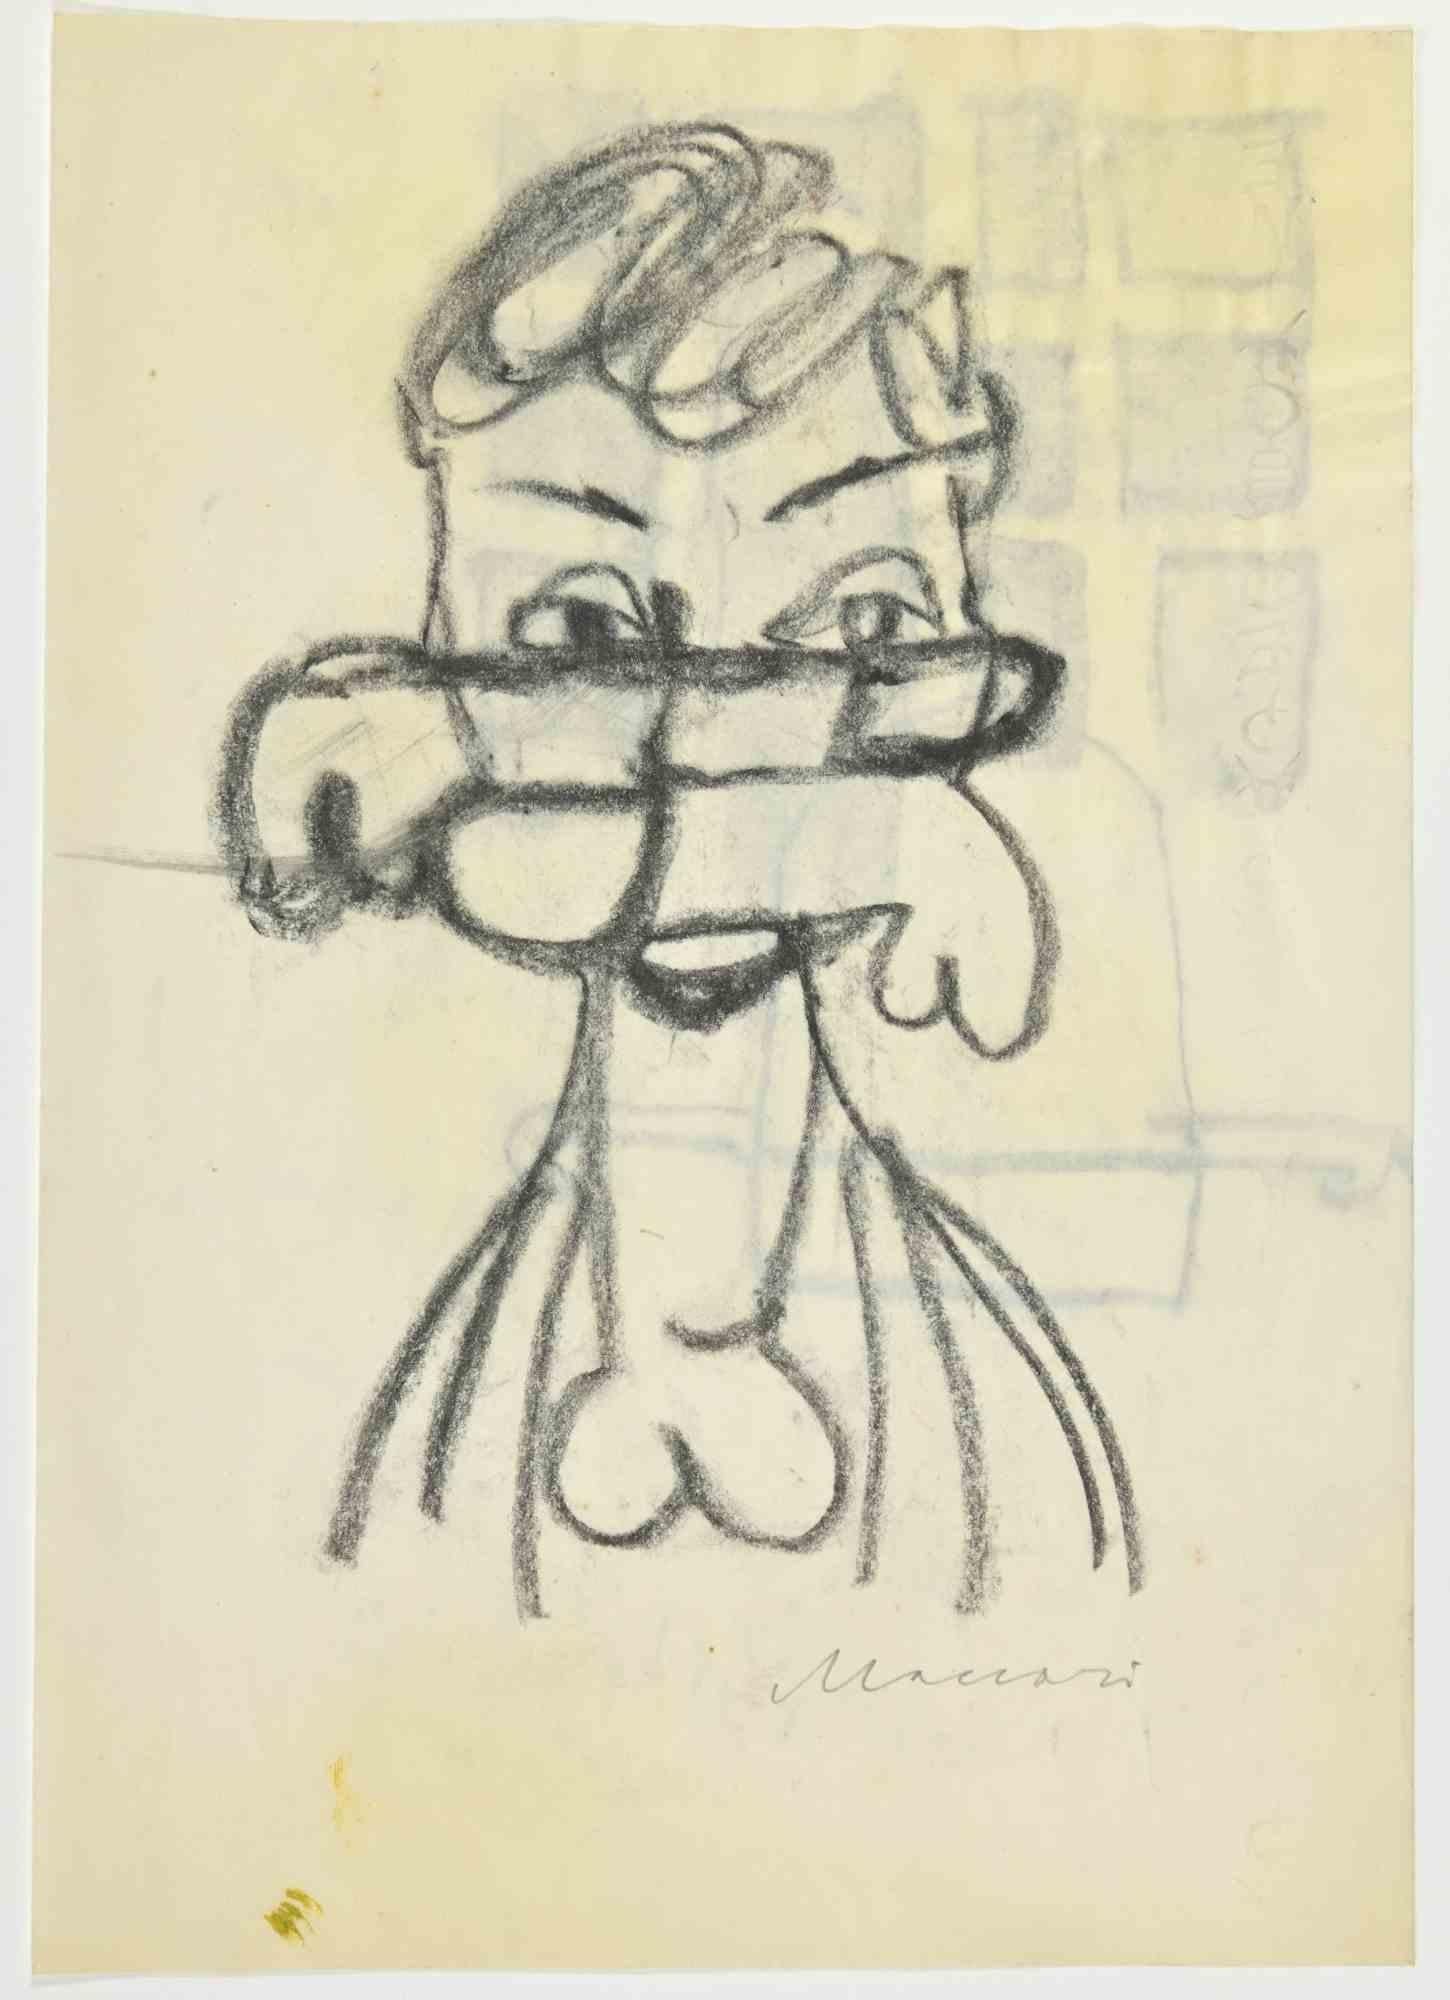 Erotic Fantasy ist eine Kohlezeichnung von Mino Maccari  (1924-1989) in den 1960er Jahren.

Handsigniert auf der Unterseite, mit einer weiteren Zeichnung auf der Rückseite.

Guter Zustand.

Mino Maccari (Siena, 1924-Rom, 16. Juni 1989) war ein